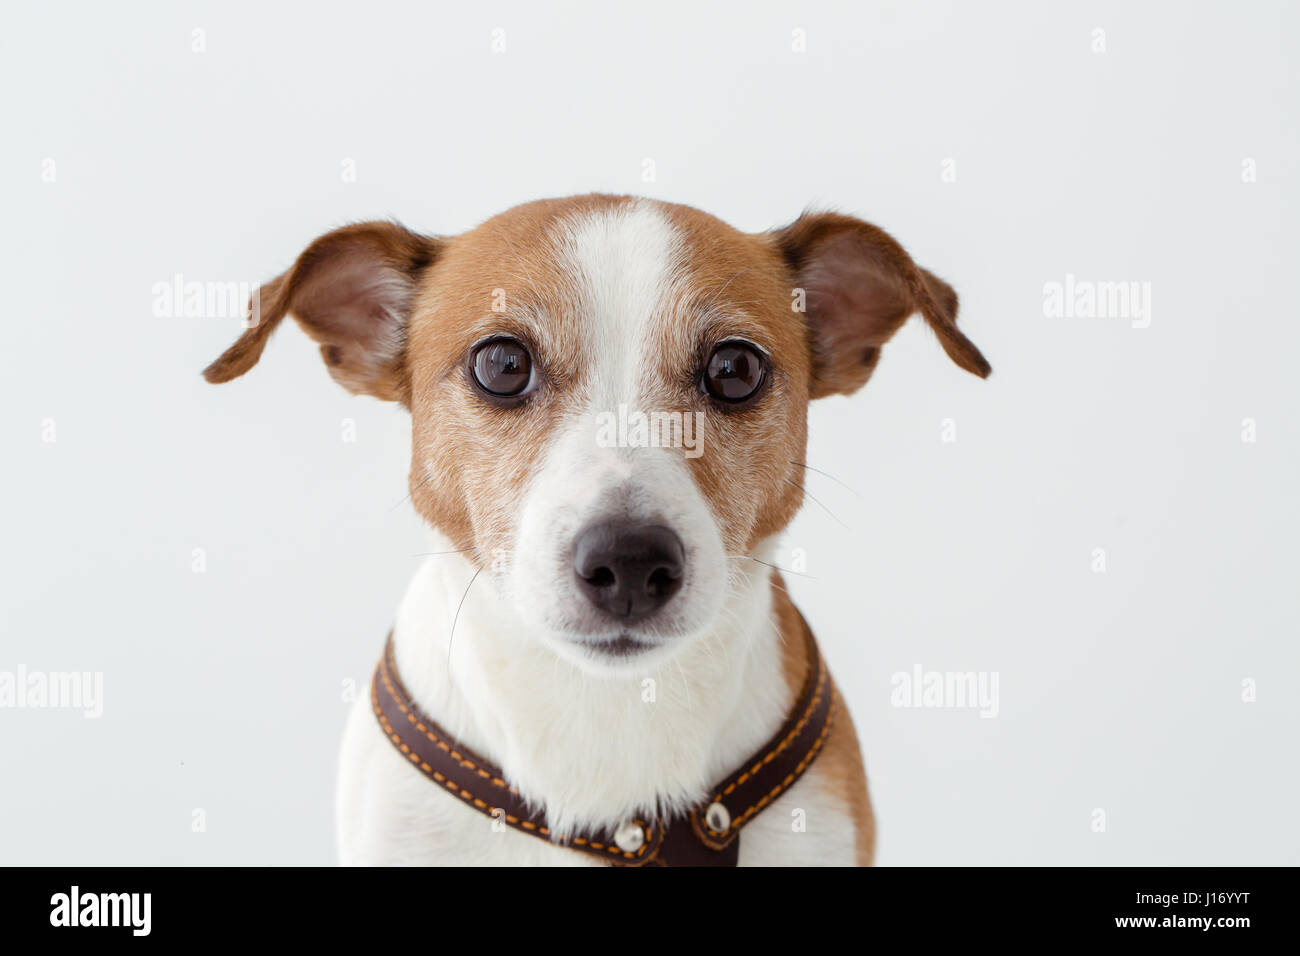 Adorable dog looking at camera Stock Photo